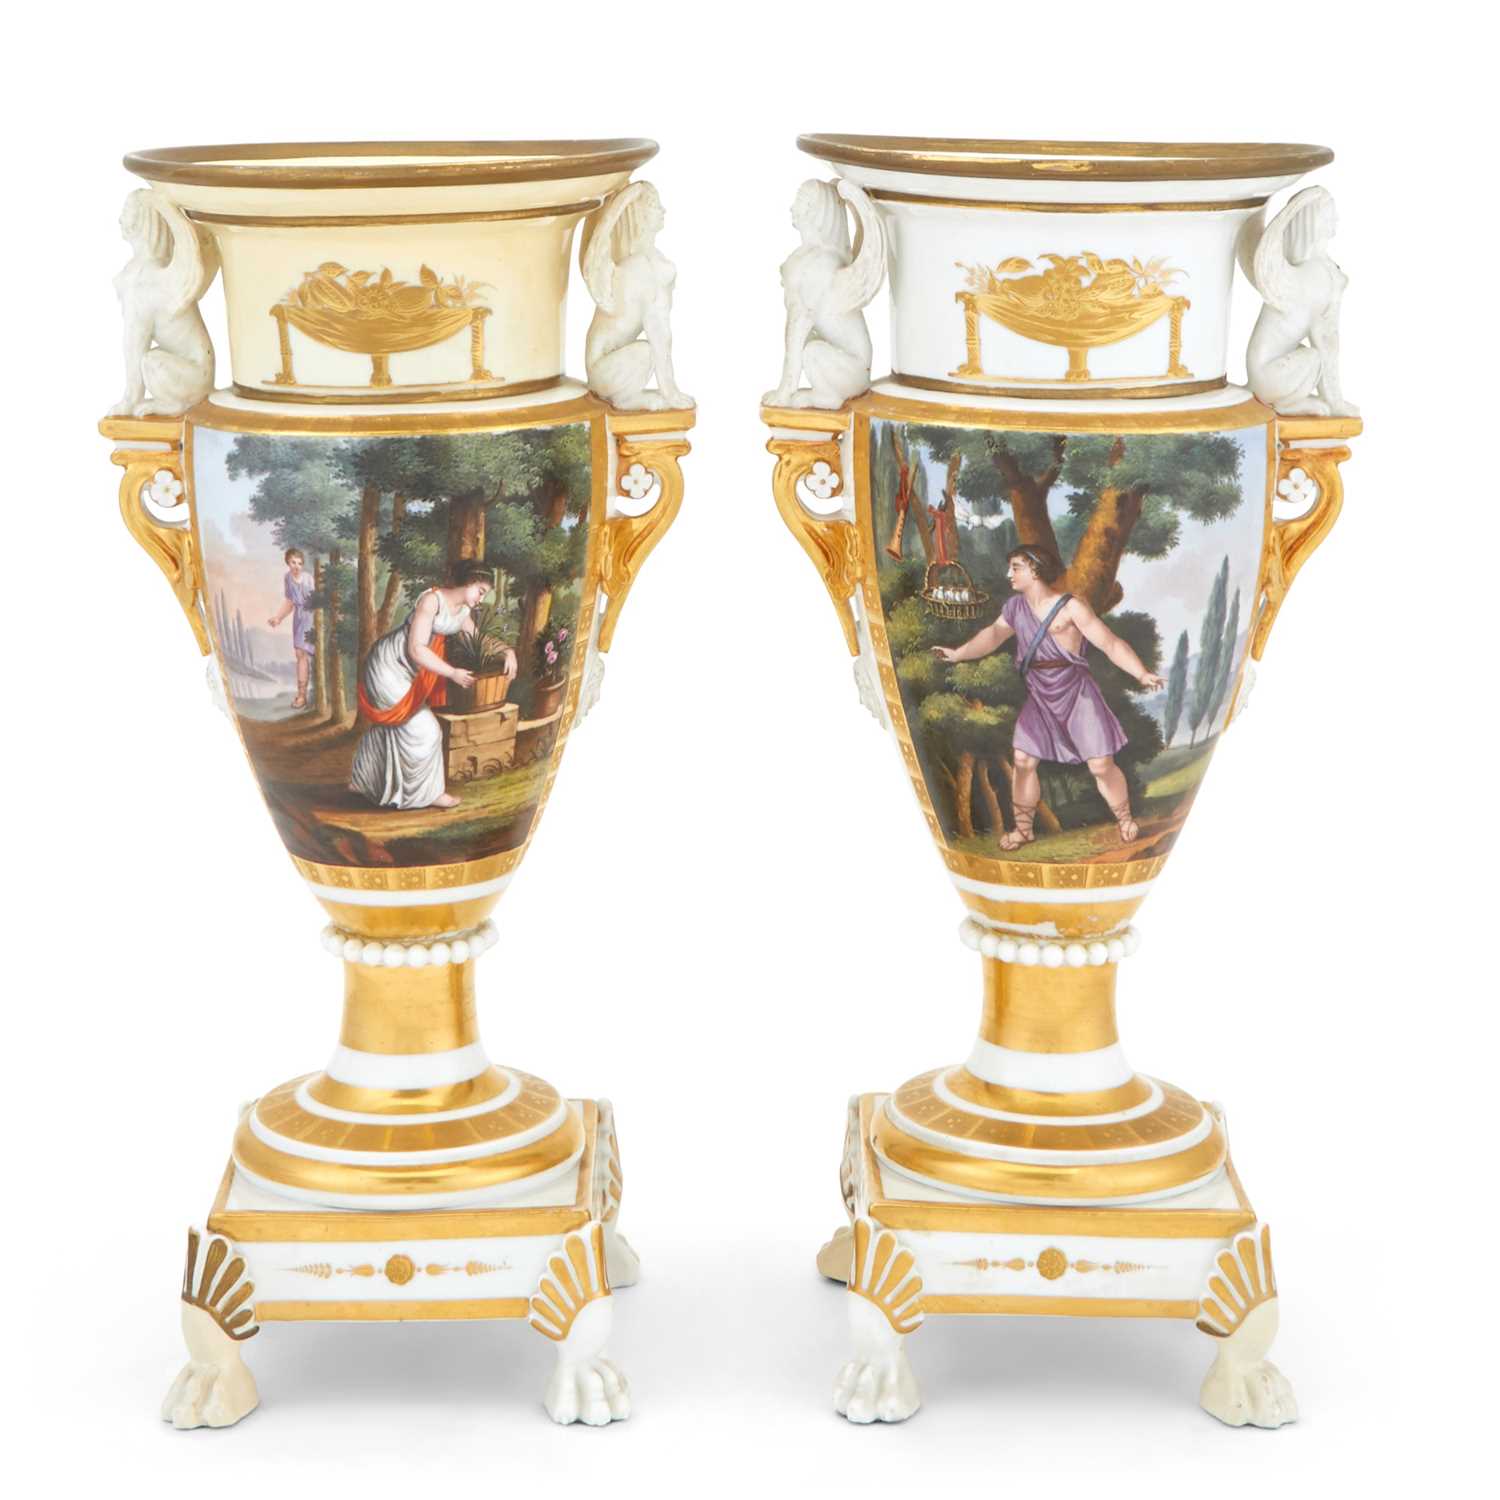 Lot 250 - Pair of Paris Porcelain Urns